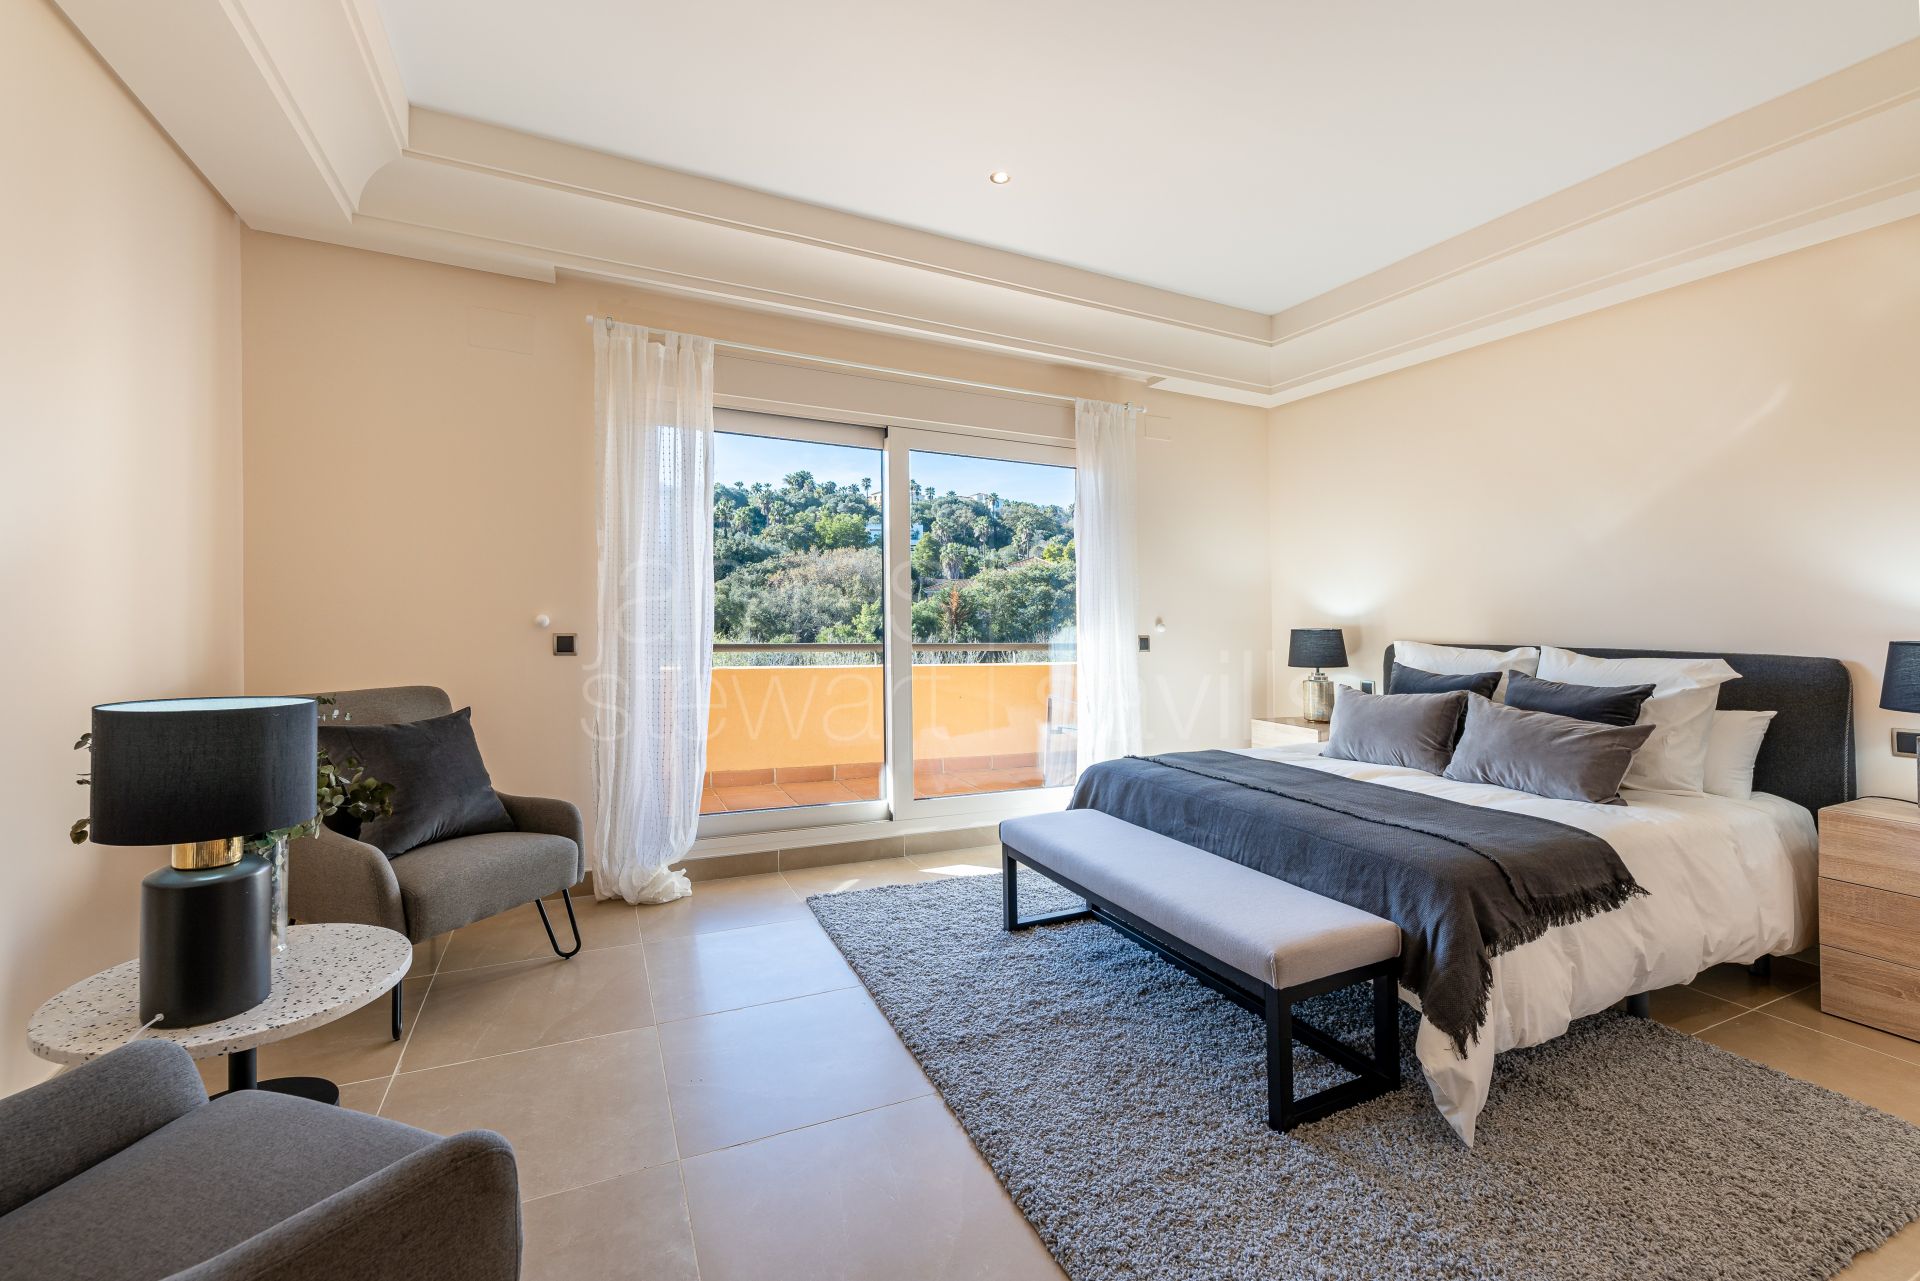 Amplios apartamentos de 3 dormitorios con vistas a la zona verde desde 468.830 €.